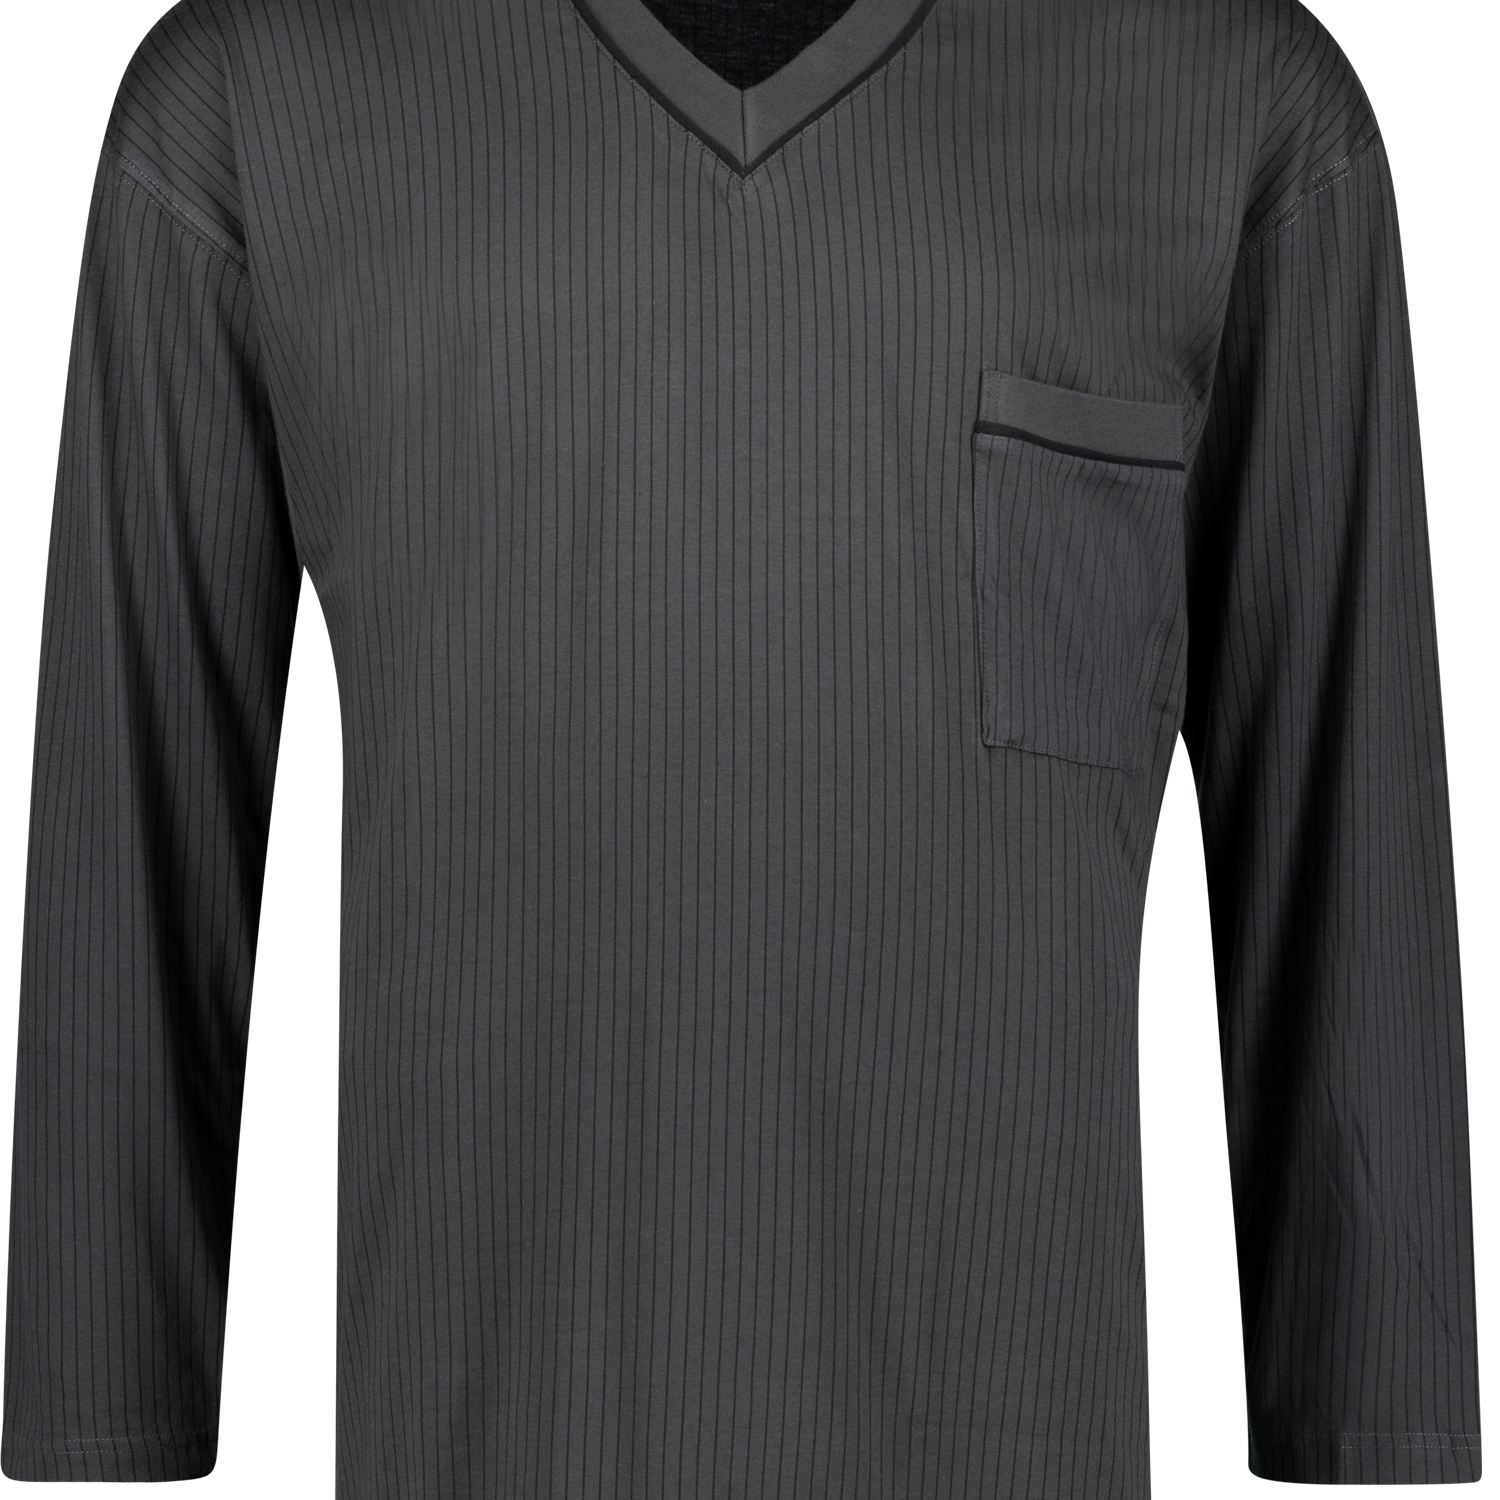 Langarm-Nachthemd von Adamo in anthrazit mit schwarzen Streifen bis Übergröße 10XL